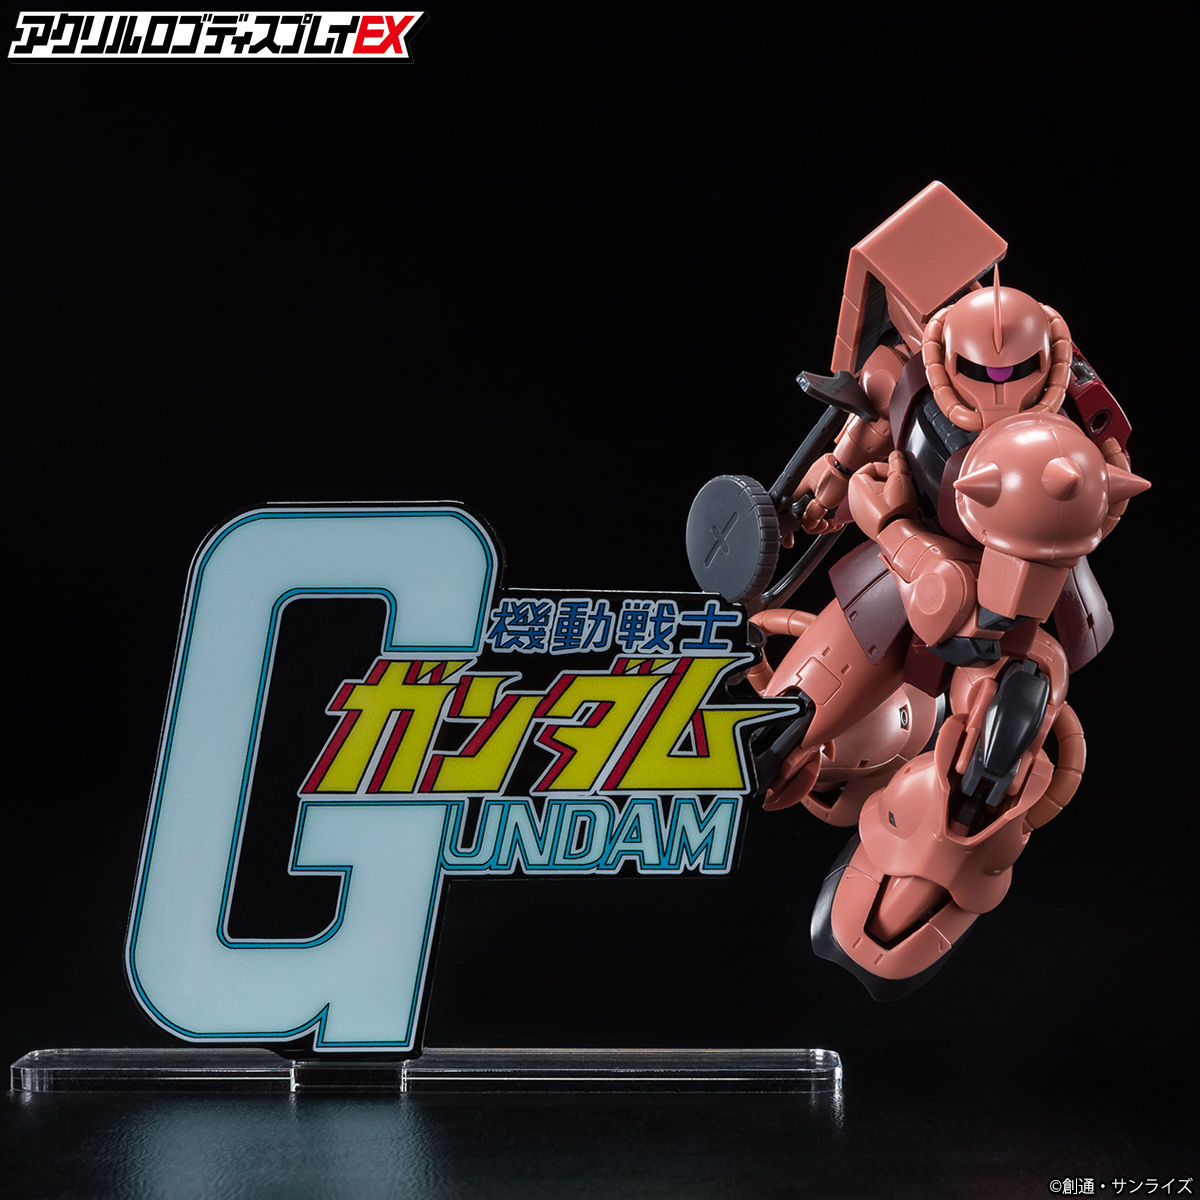 Mega Size of Acrylic Logo Display EX Mobile Suit Gundam